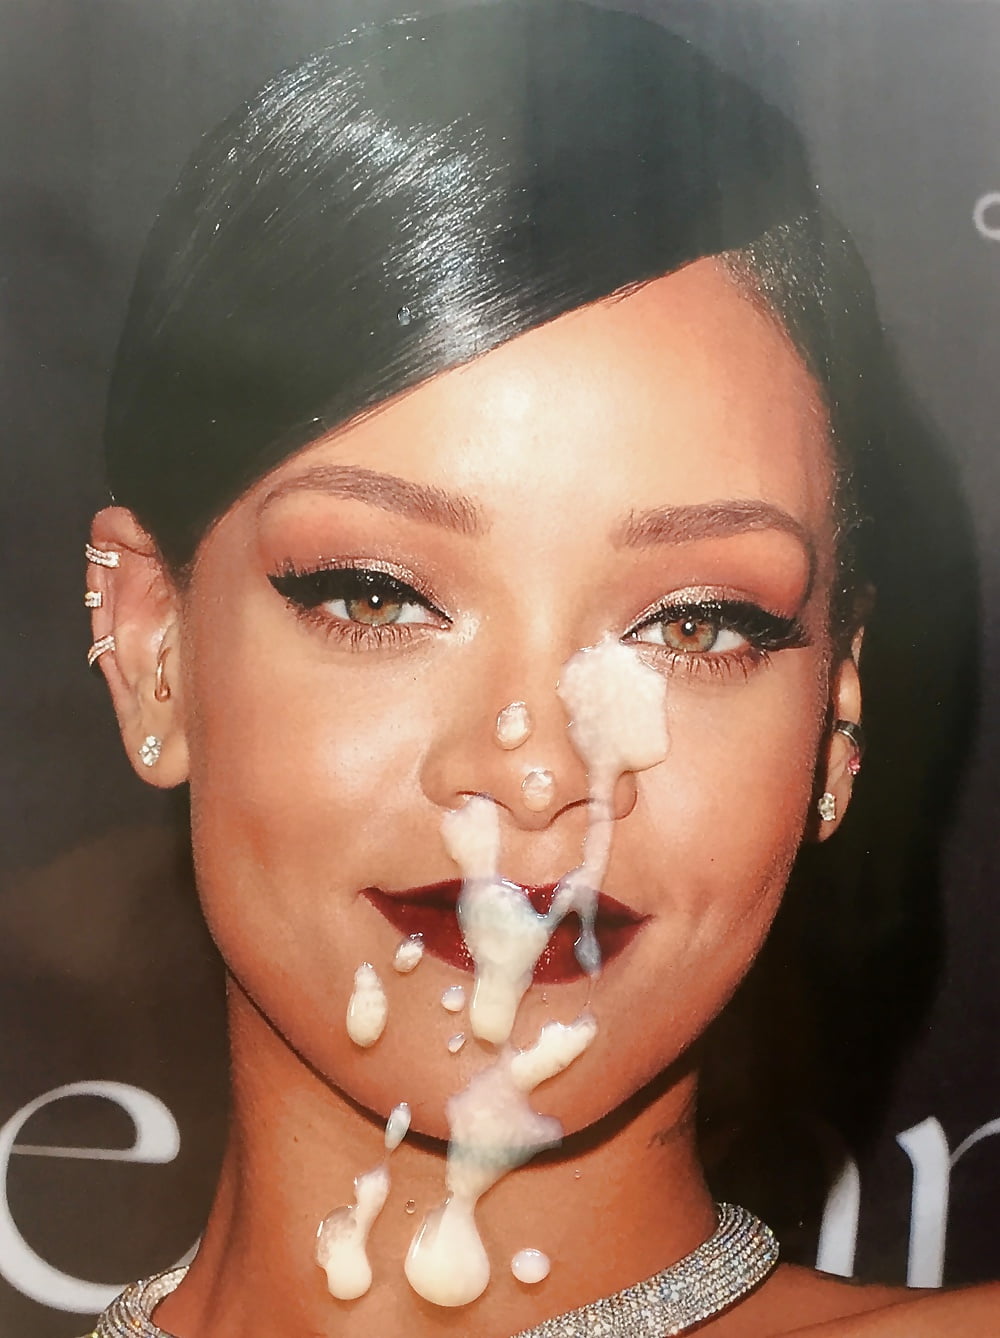 Rihanna gives blowjob